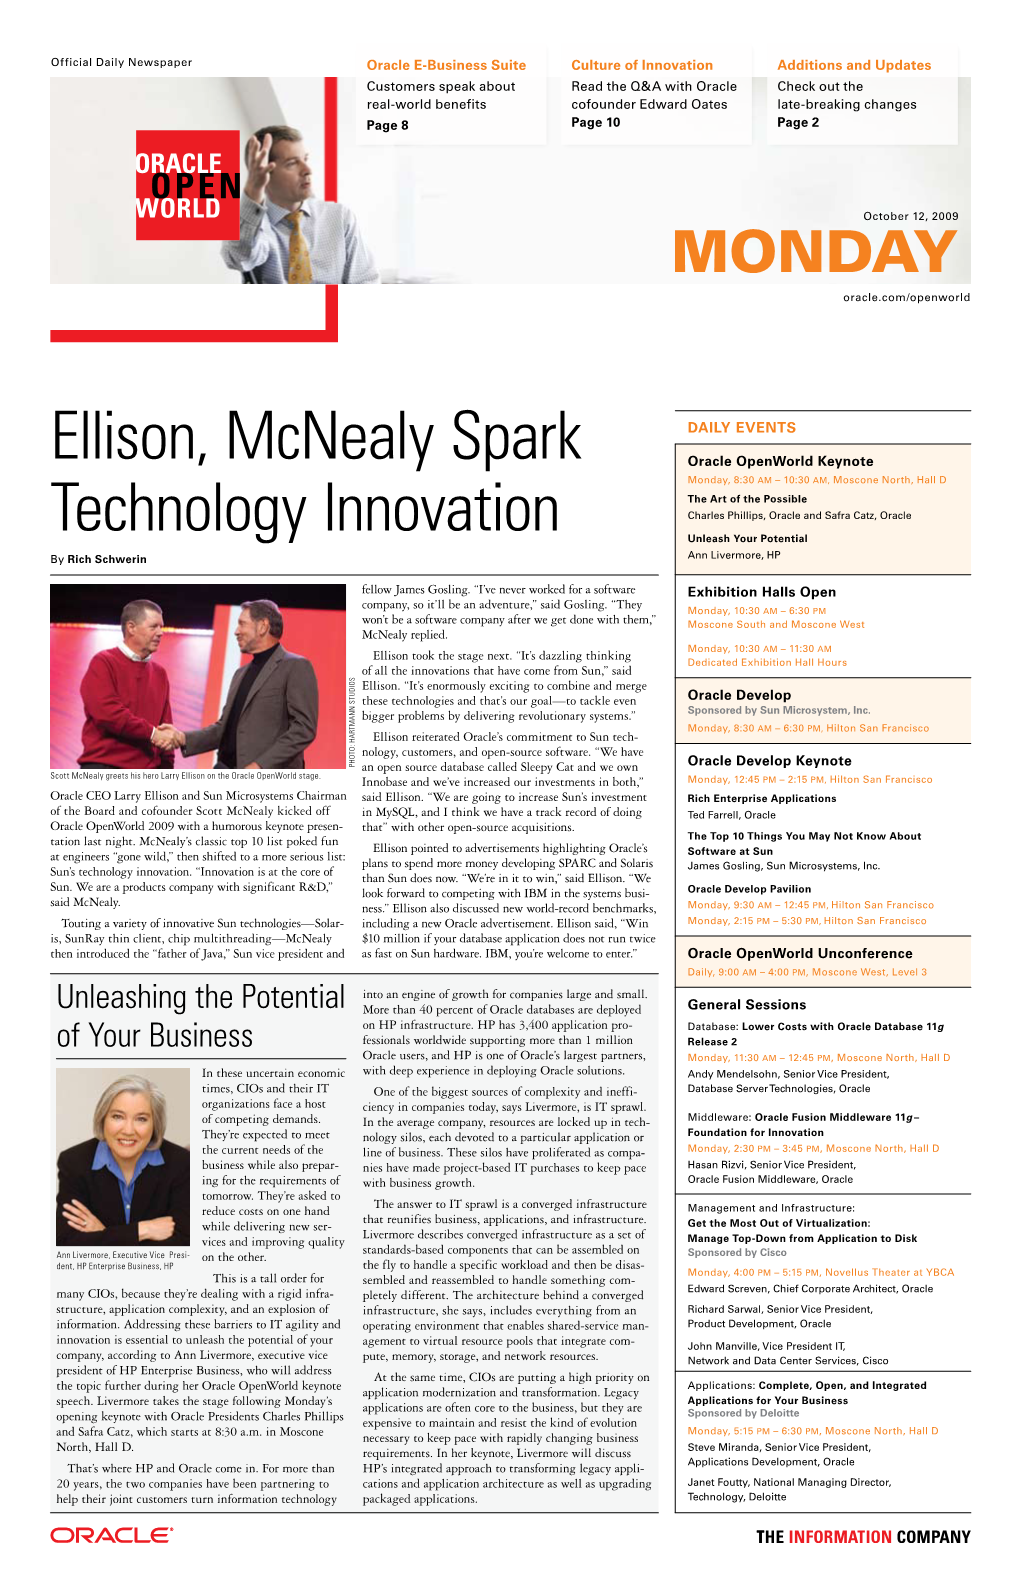 Ellison, Mcnealy Spark Technology Innovation